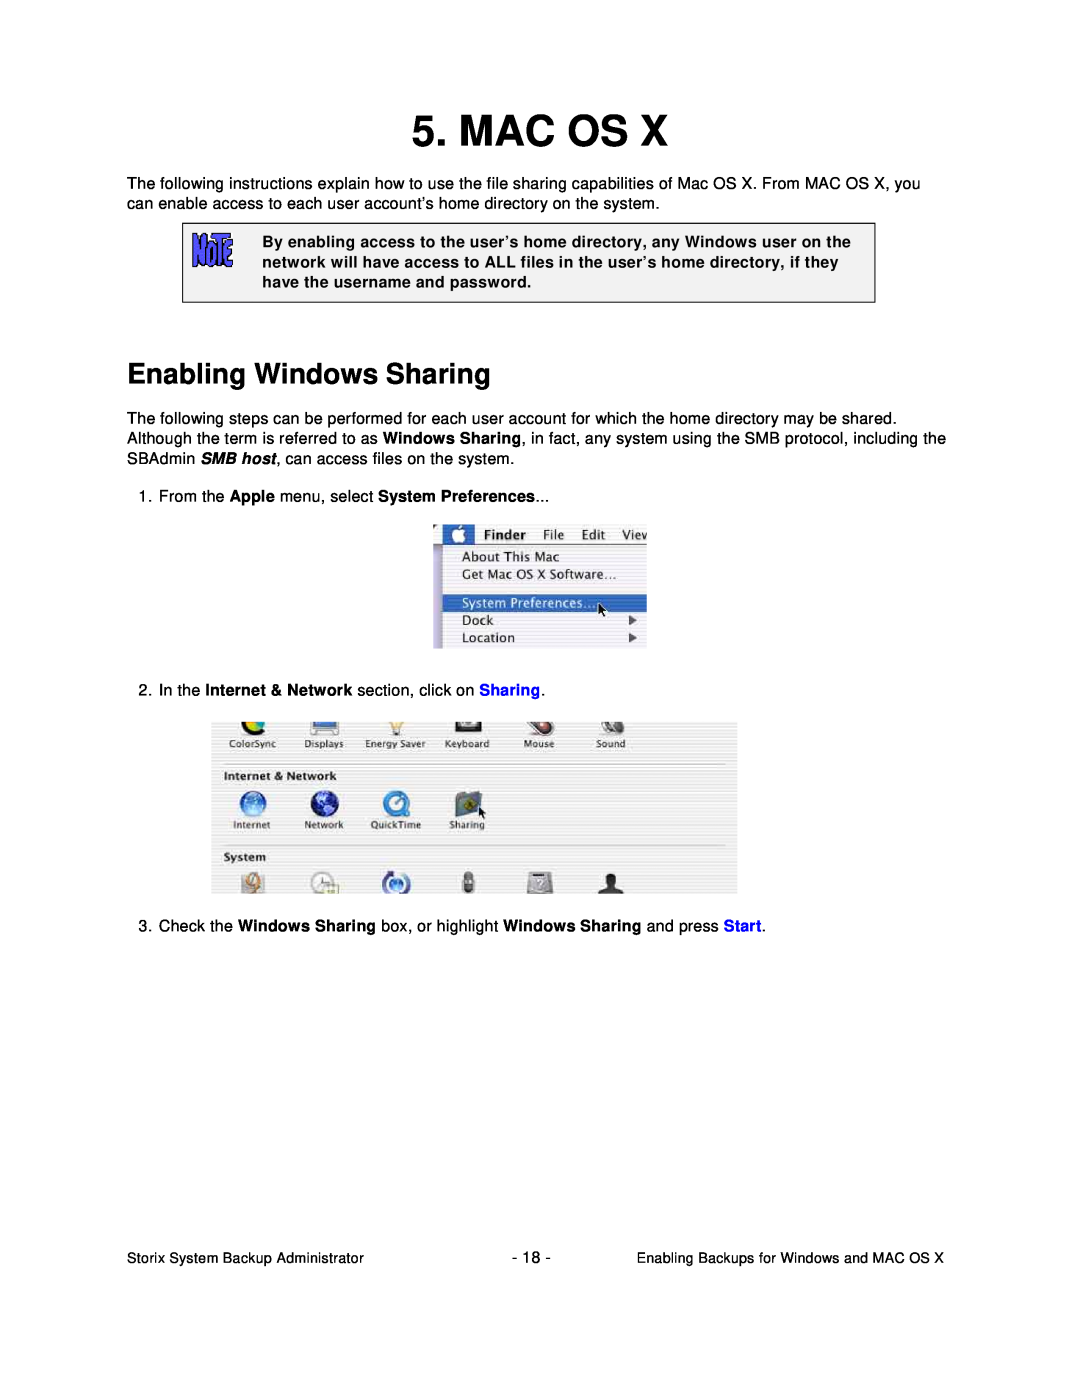 Apple ipod manual Mac Os, Enabling Windows Sharing 